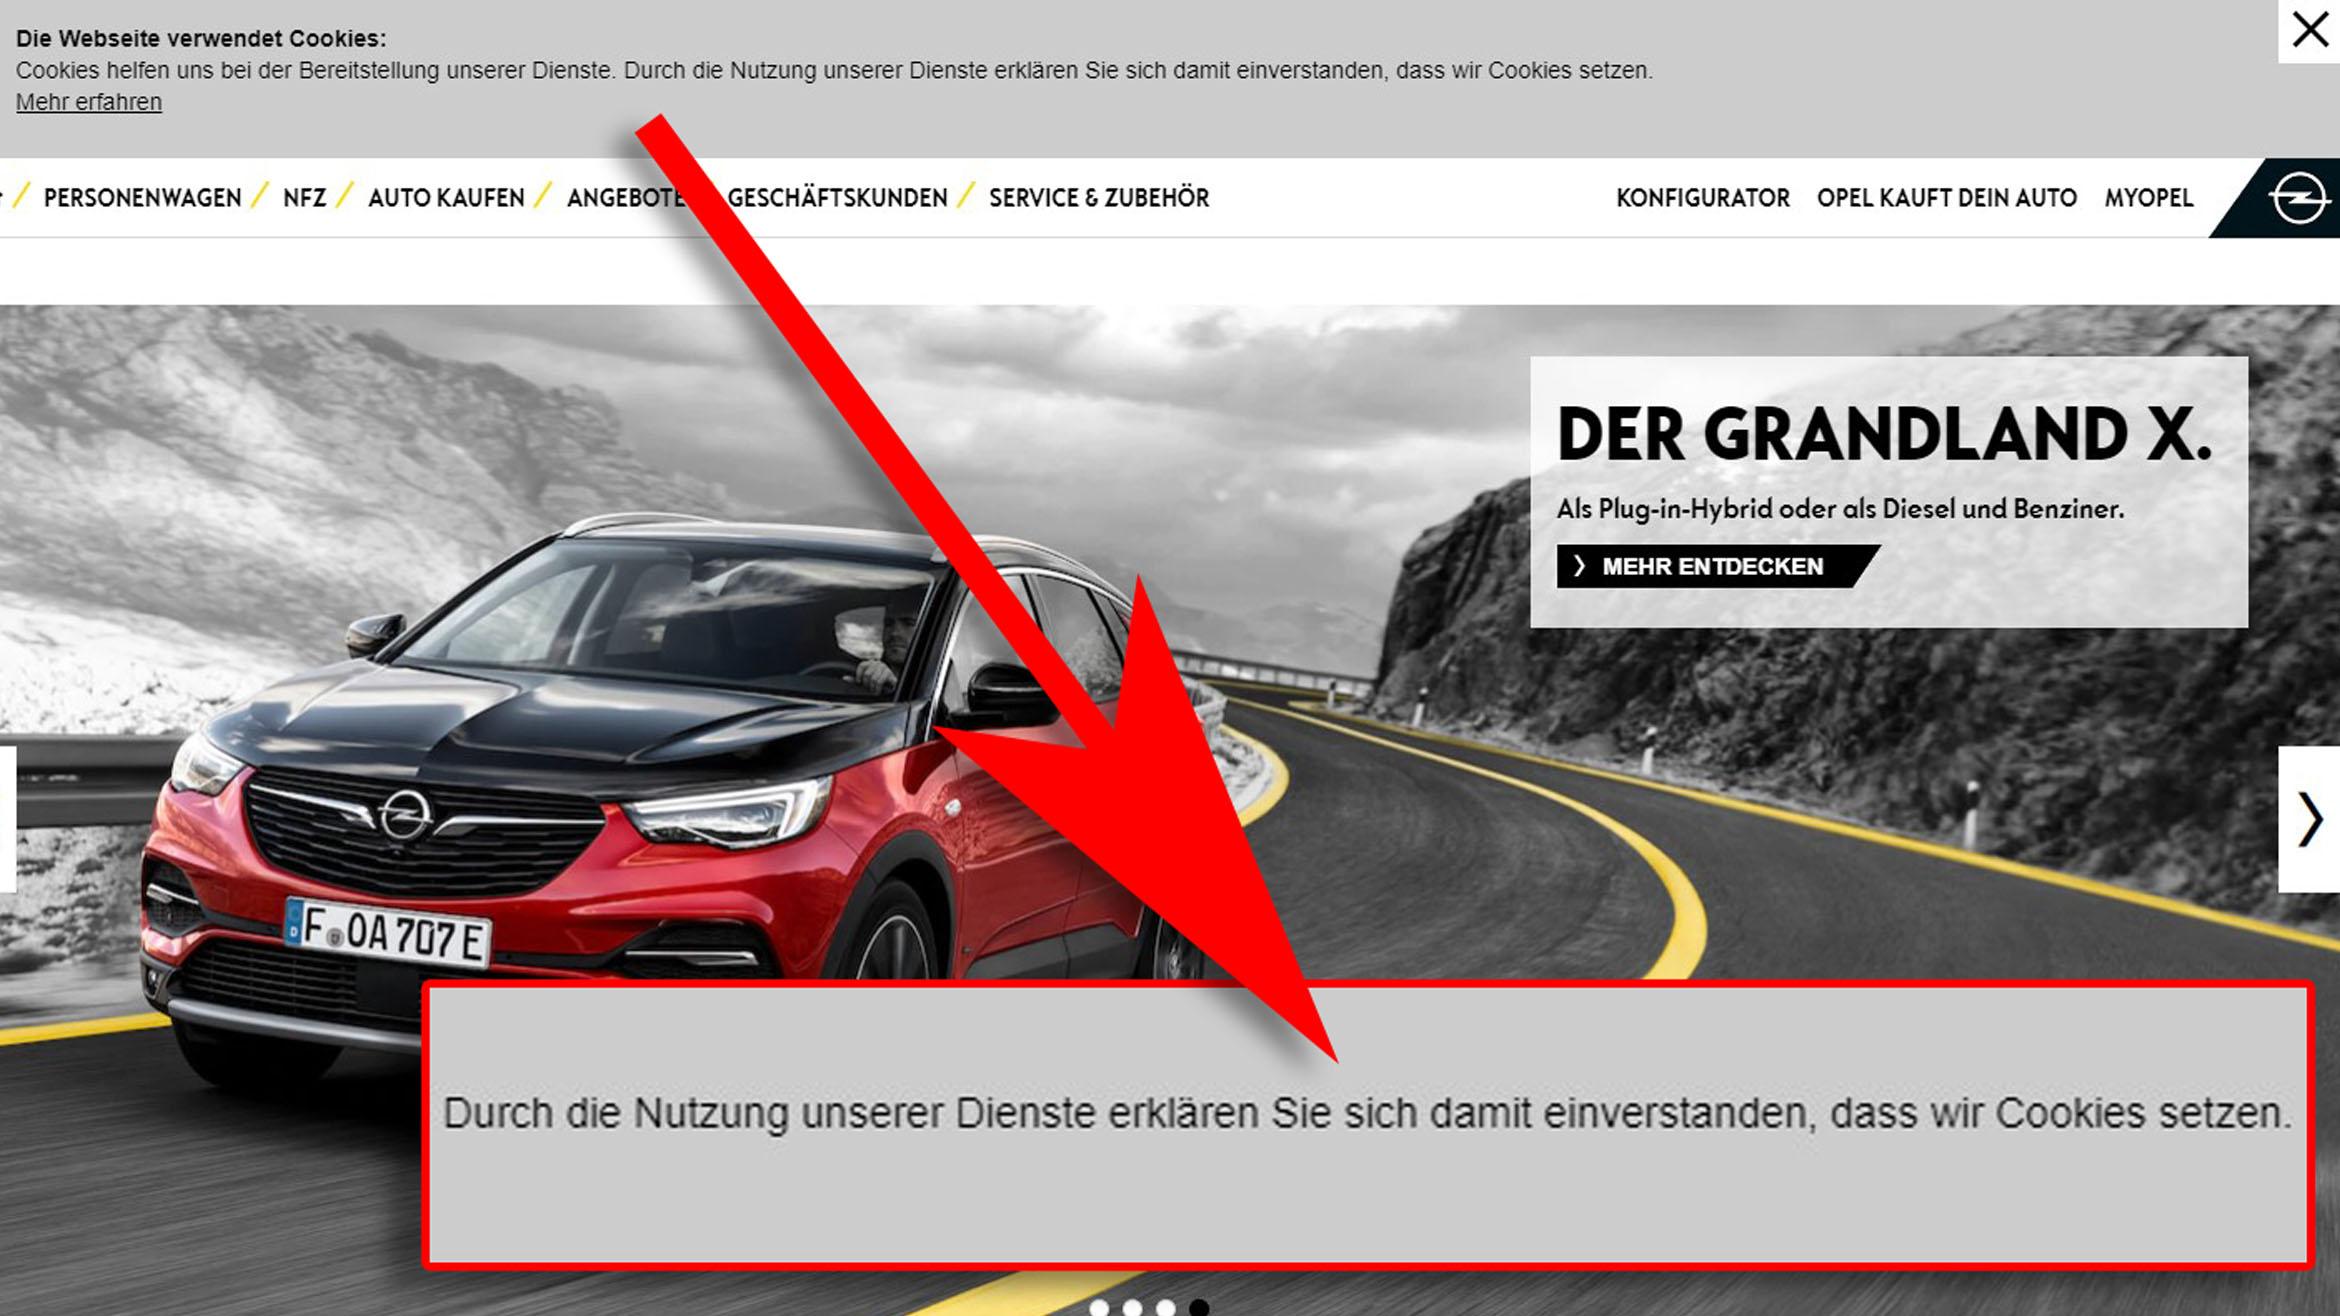 Zeit zur Renovierung: Schon heute genügt das Cookie Banner von Opel den Rechtsanforderungen nicht mehr